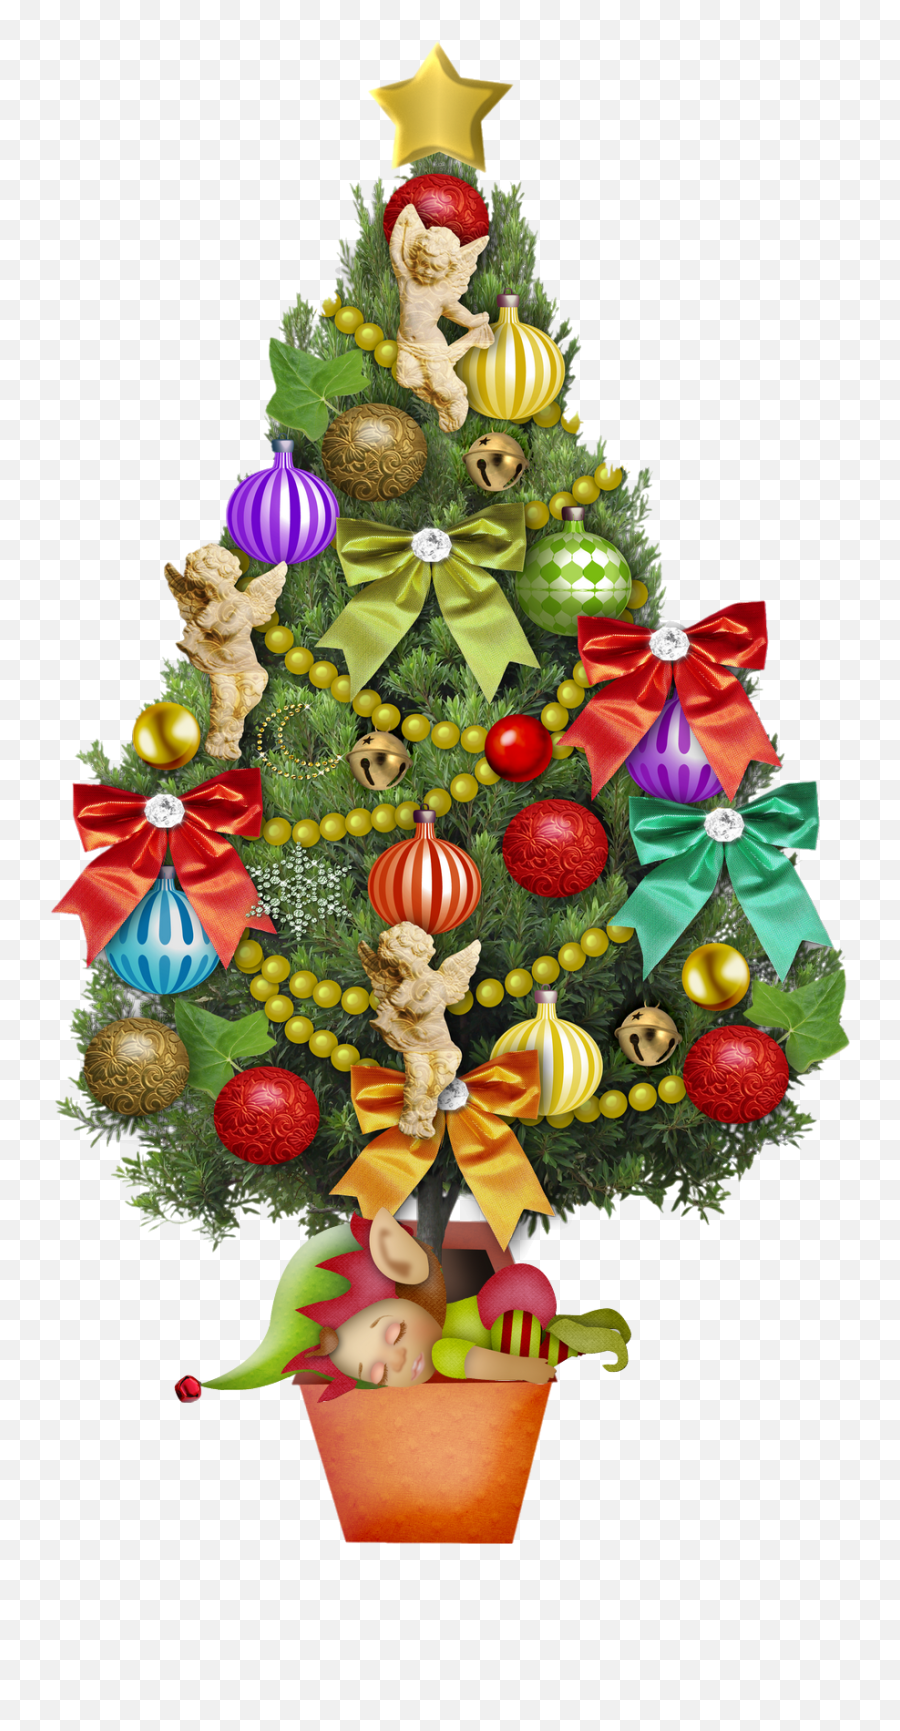 Christmas Ornaments Holiday Decor - Christmas Day Emoji,Christmas Ornament Emoji